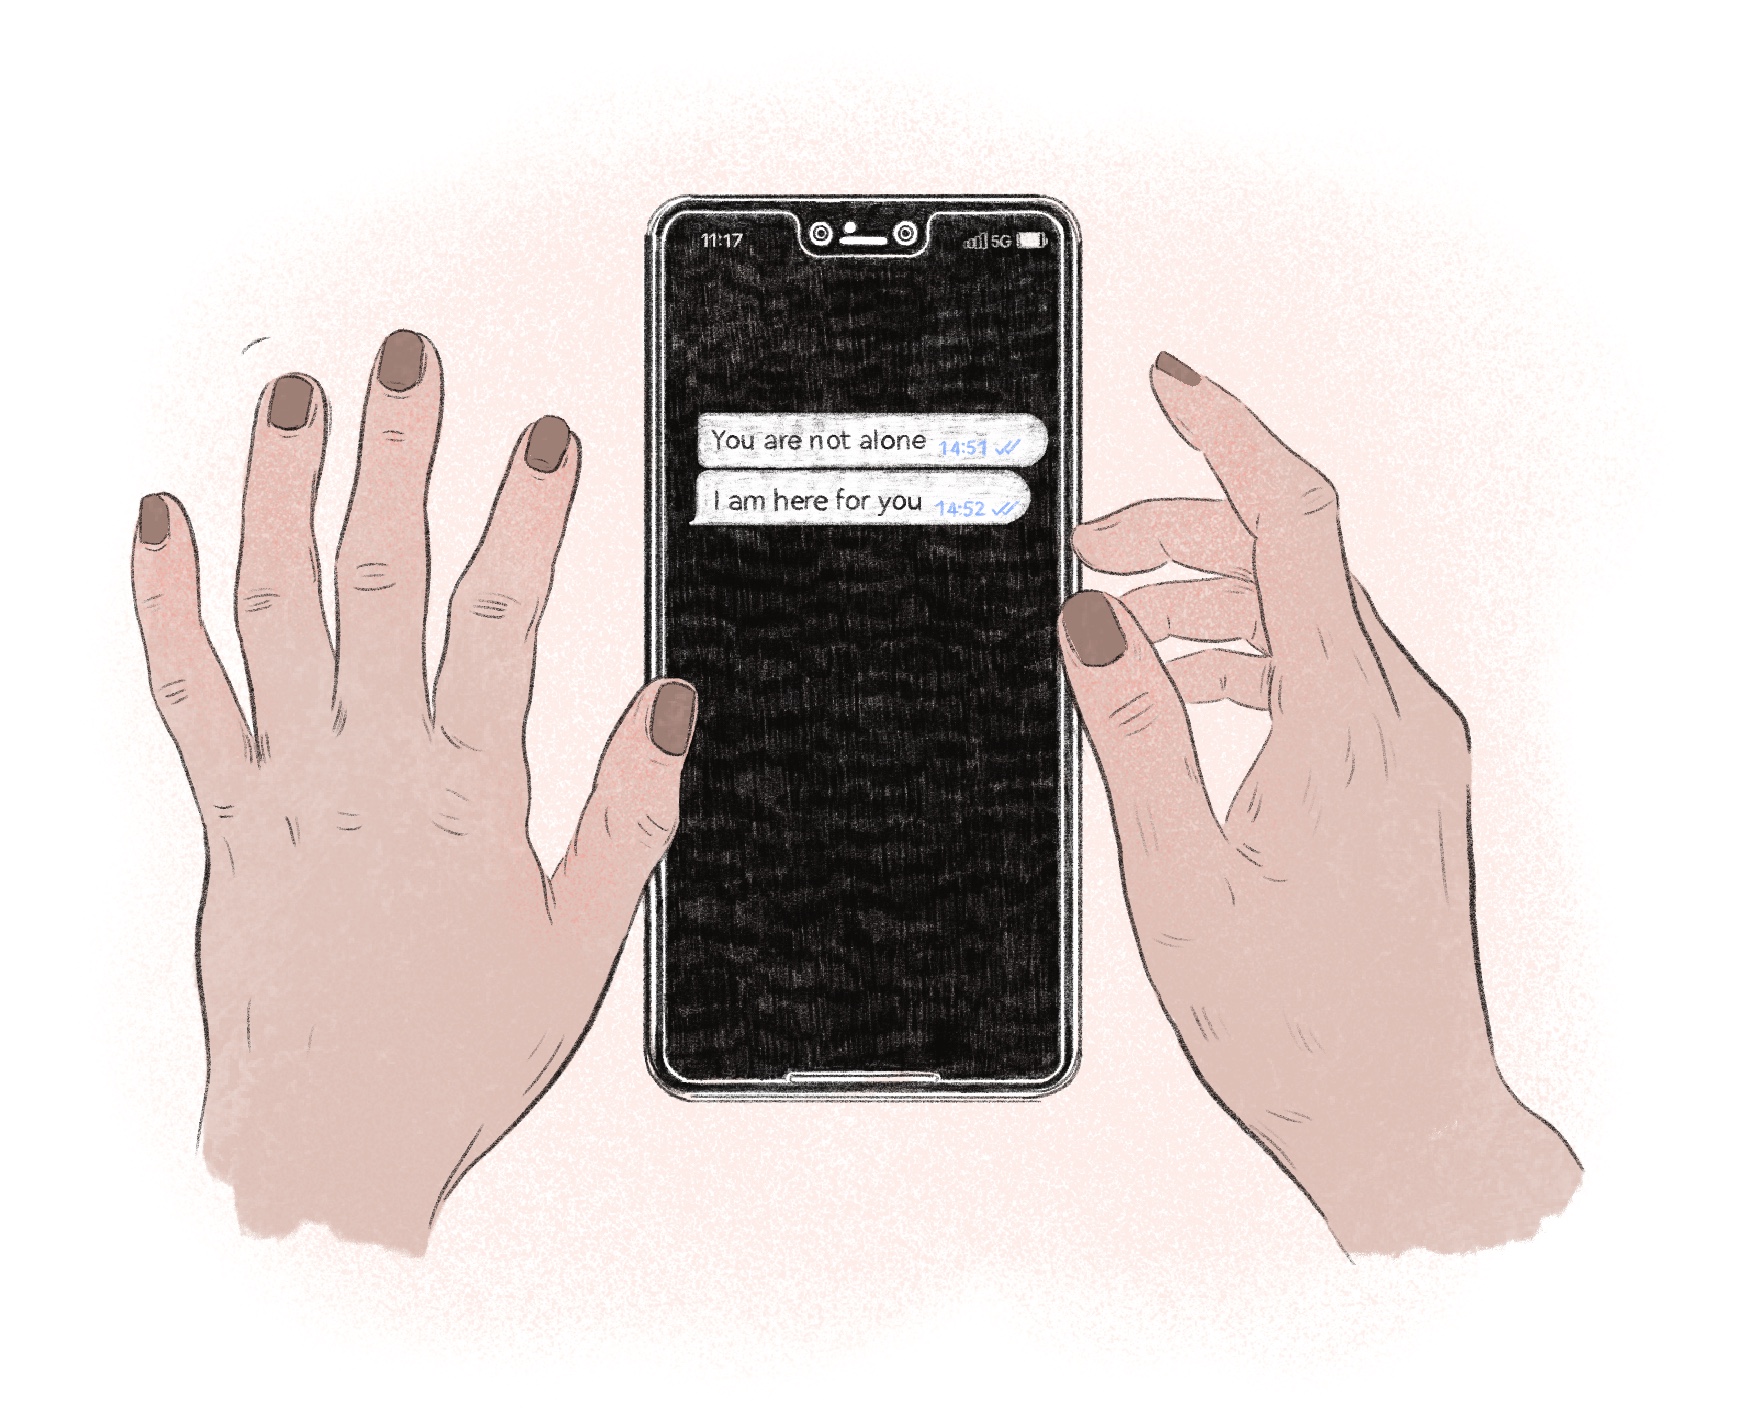 In der Mitte liegt ein Smartphone mit schwarzem Bildschirm, darauf zwei Chatnachrichten. Die erste sagt "You are not alone" um 14:51 Uhr, danach die "I am here for you" um 14:52. Zwei Hände mit braunem Nagellack sind neben dem Smartphone, die rechte Hand hebt den Zeigefinger zum Scrollen an. 